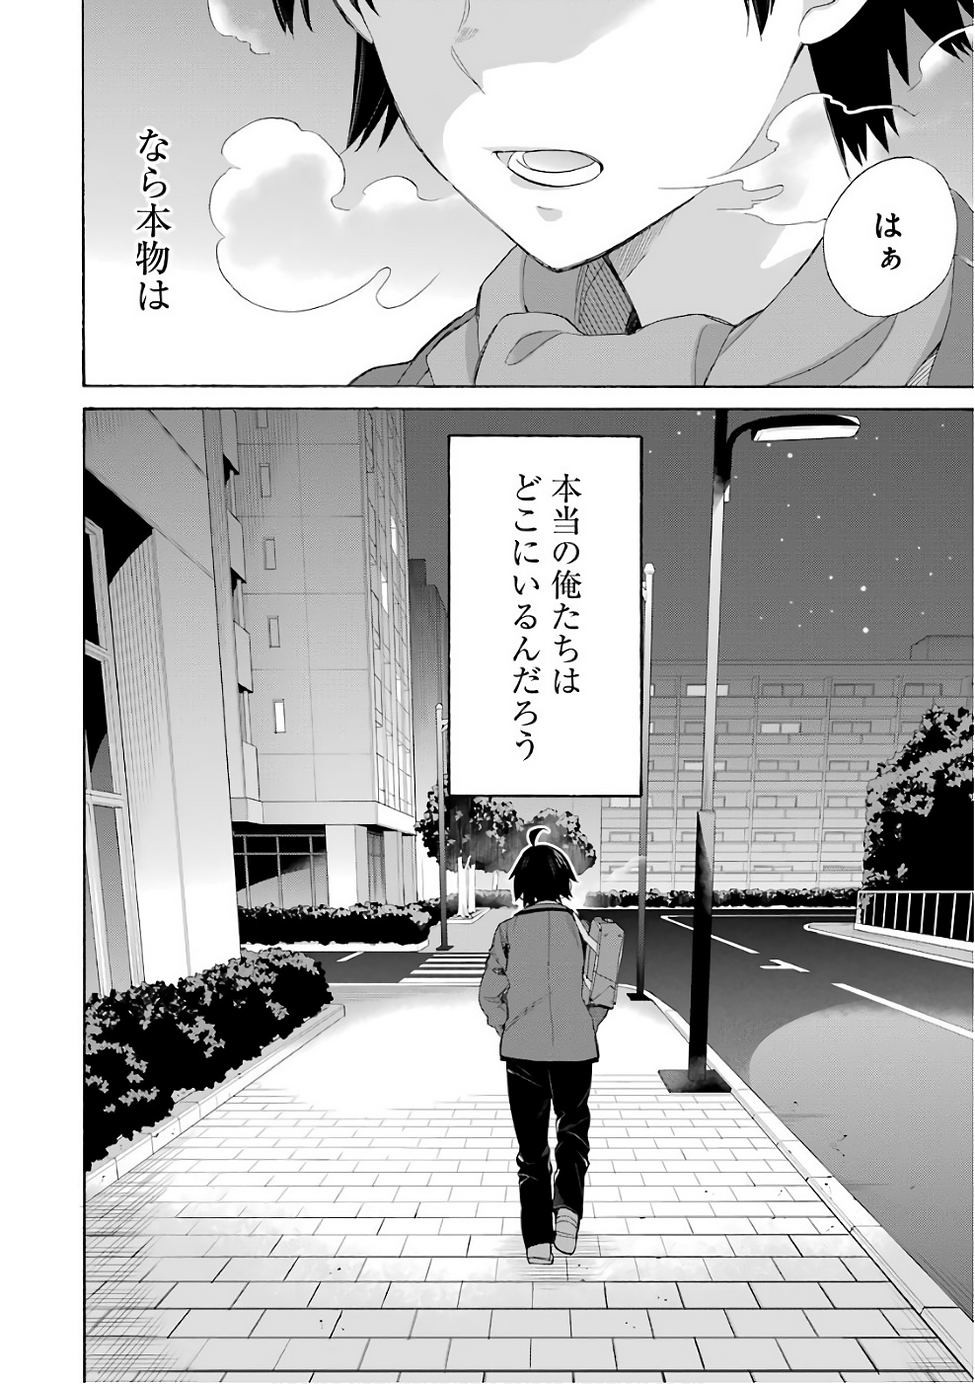 Yahari Ore no Seishun Rabukome wa Machigatte Iru. - Monologue - Chapter 55 - Page 26